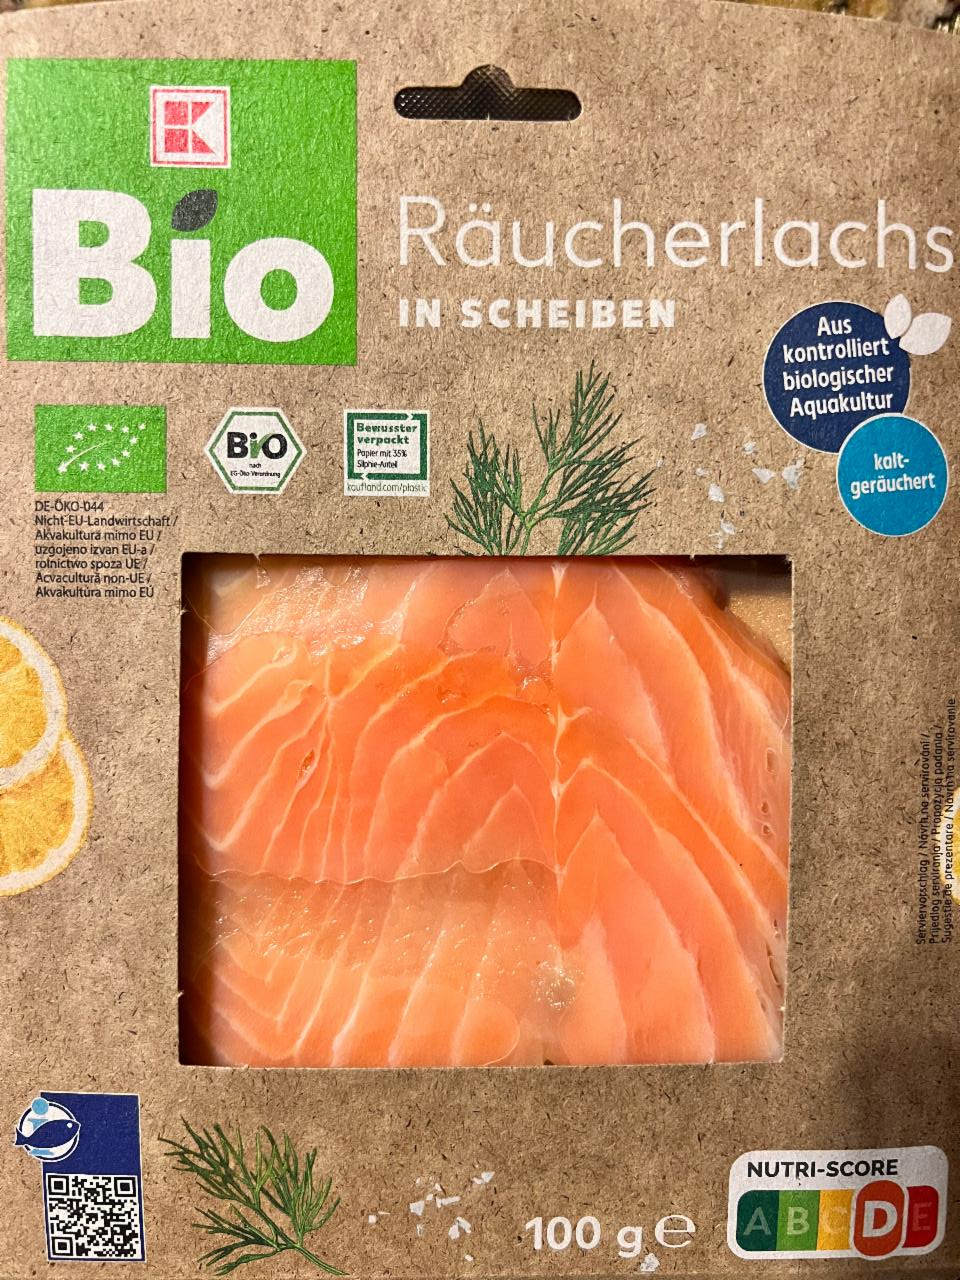 Fotografie - Räucherlachs in Scheiben K-Bio